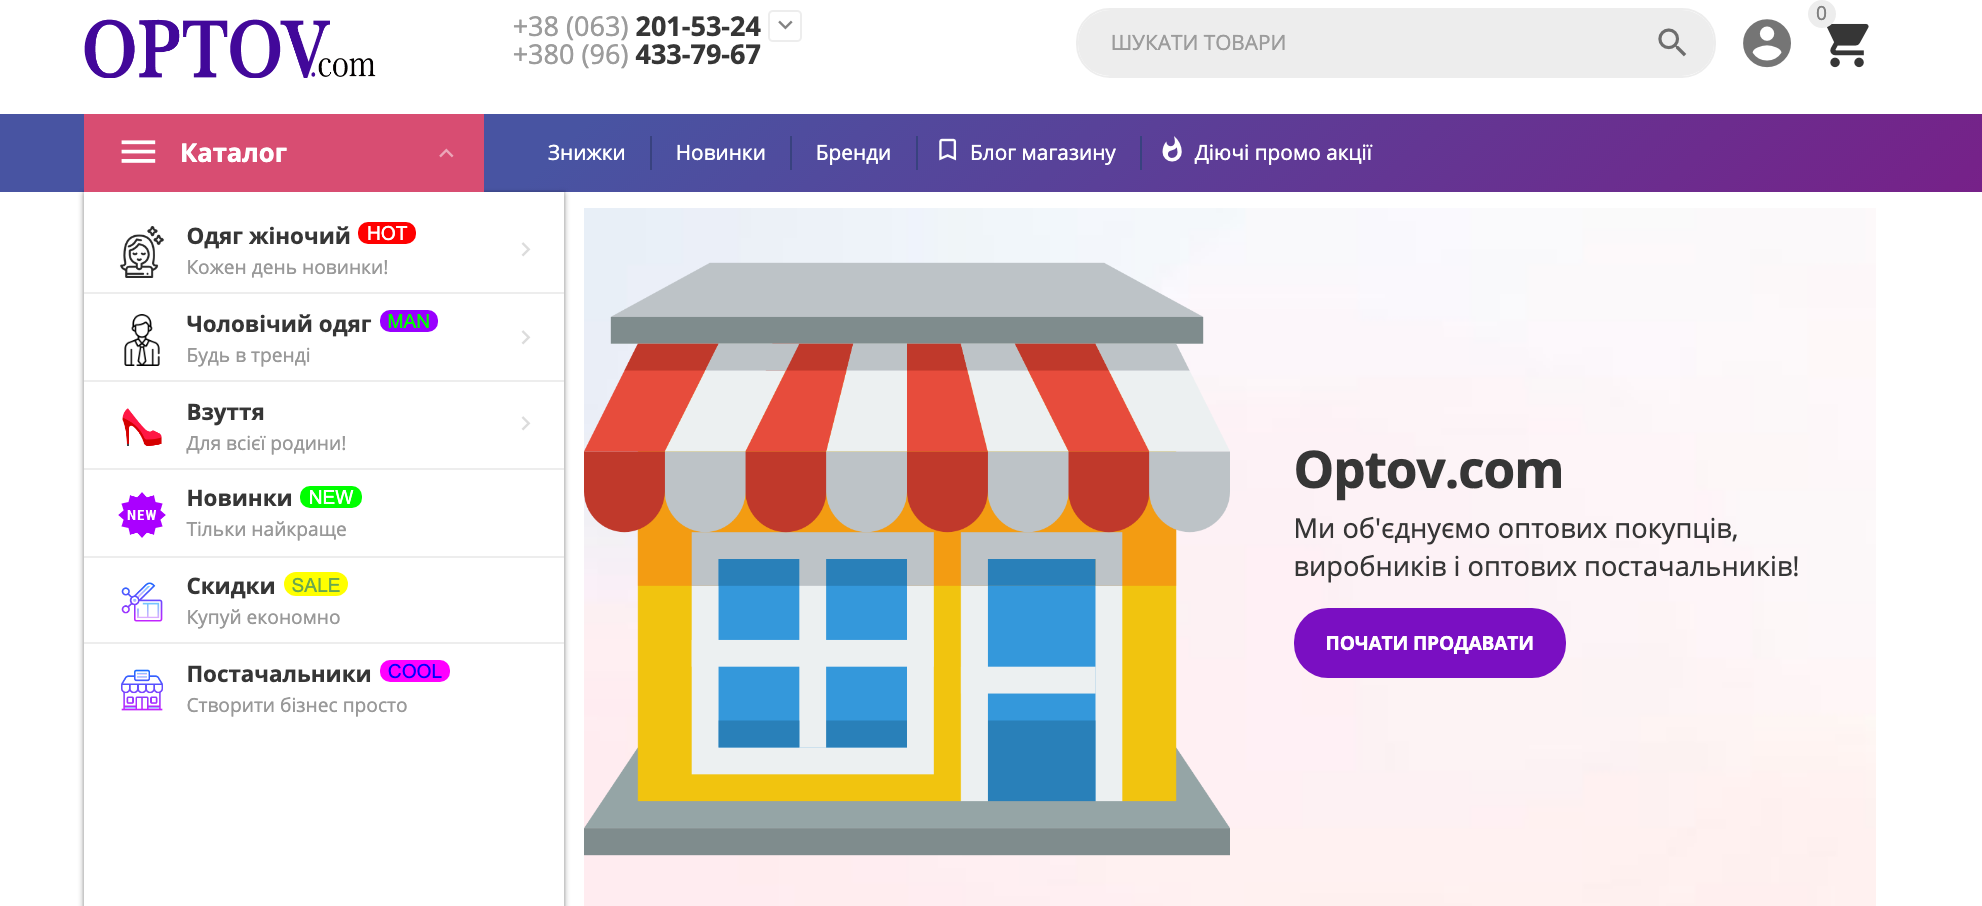 Optov - MarketPlace b2b clothing